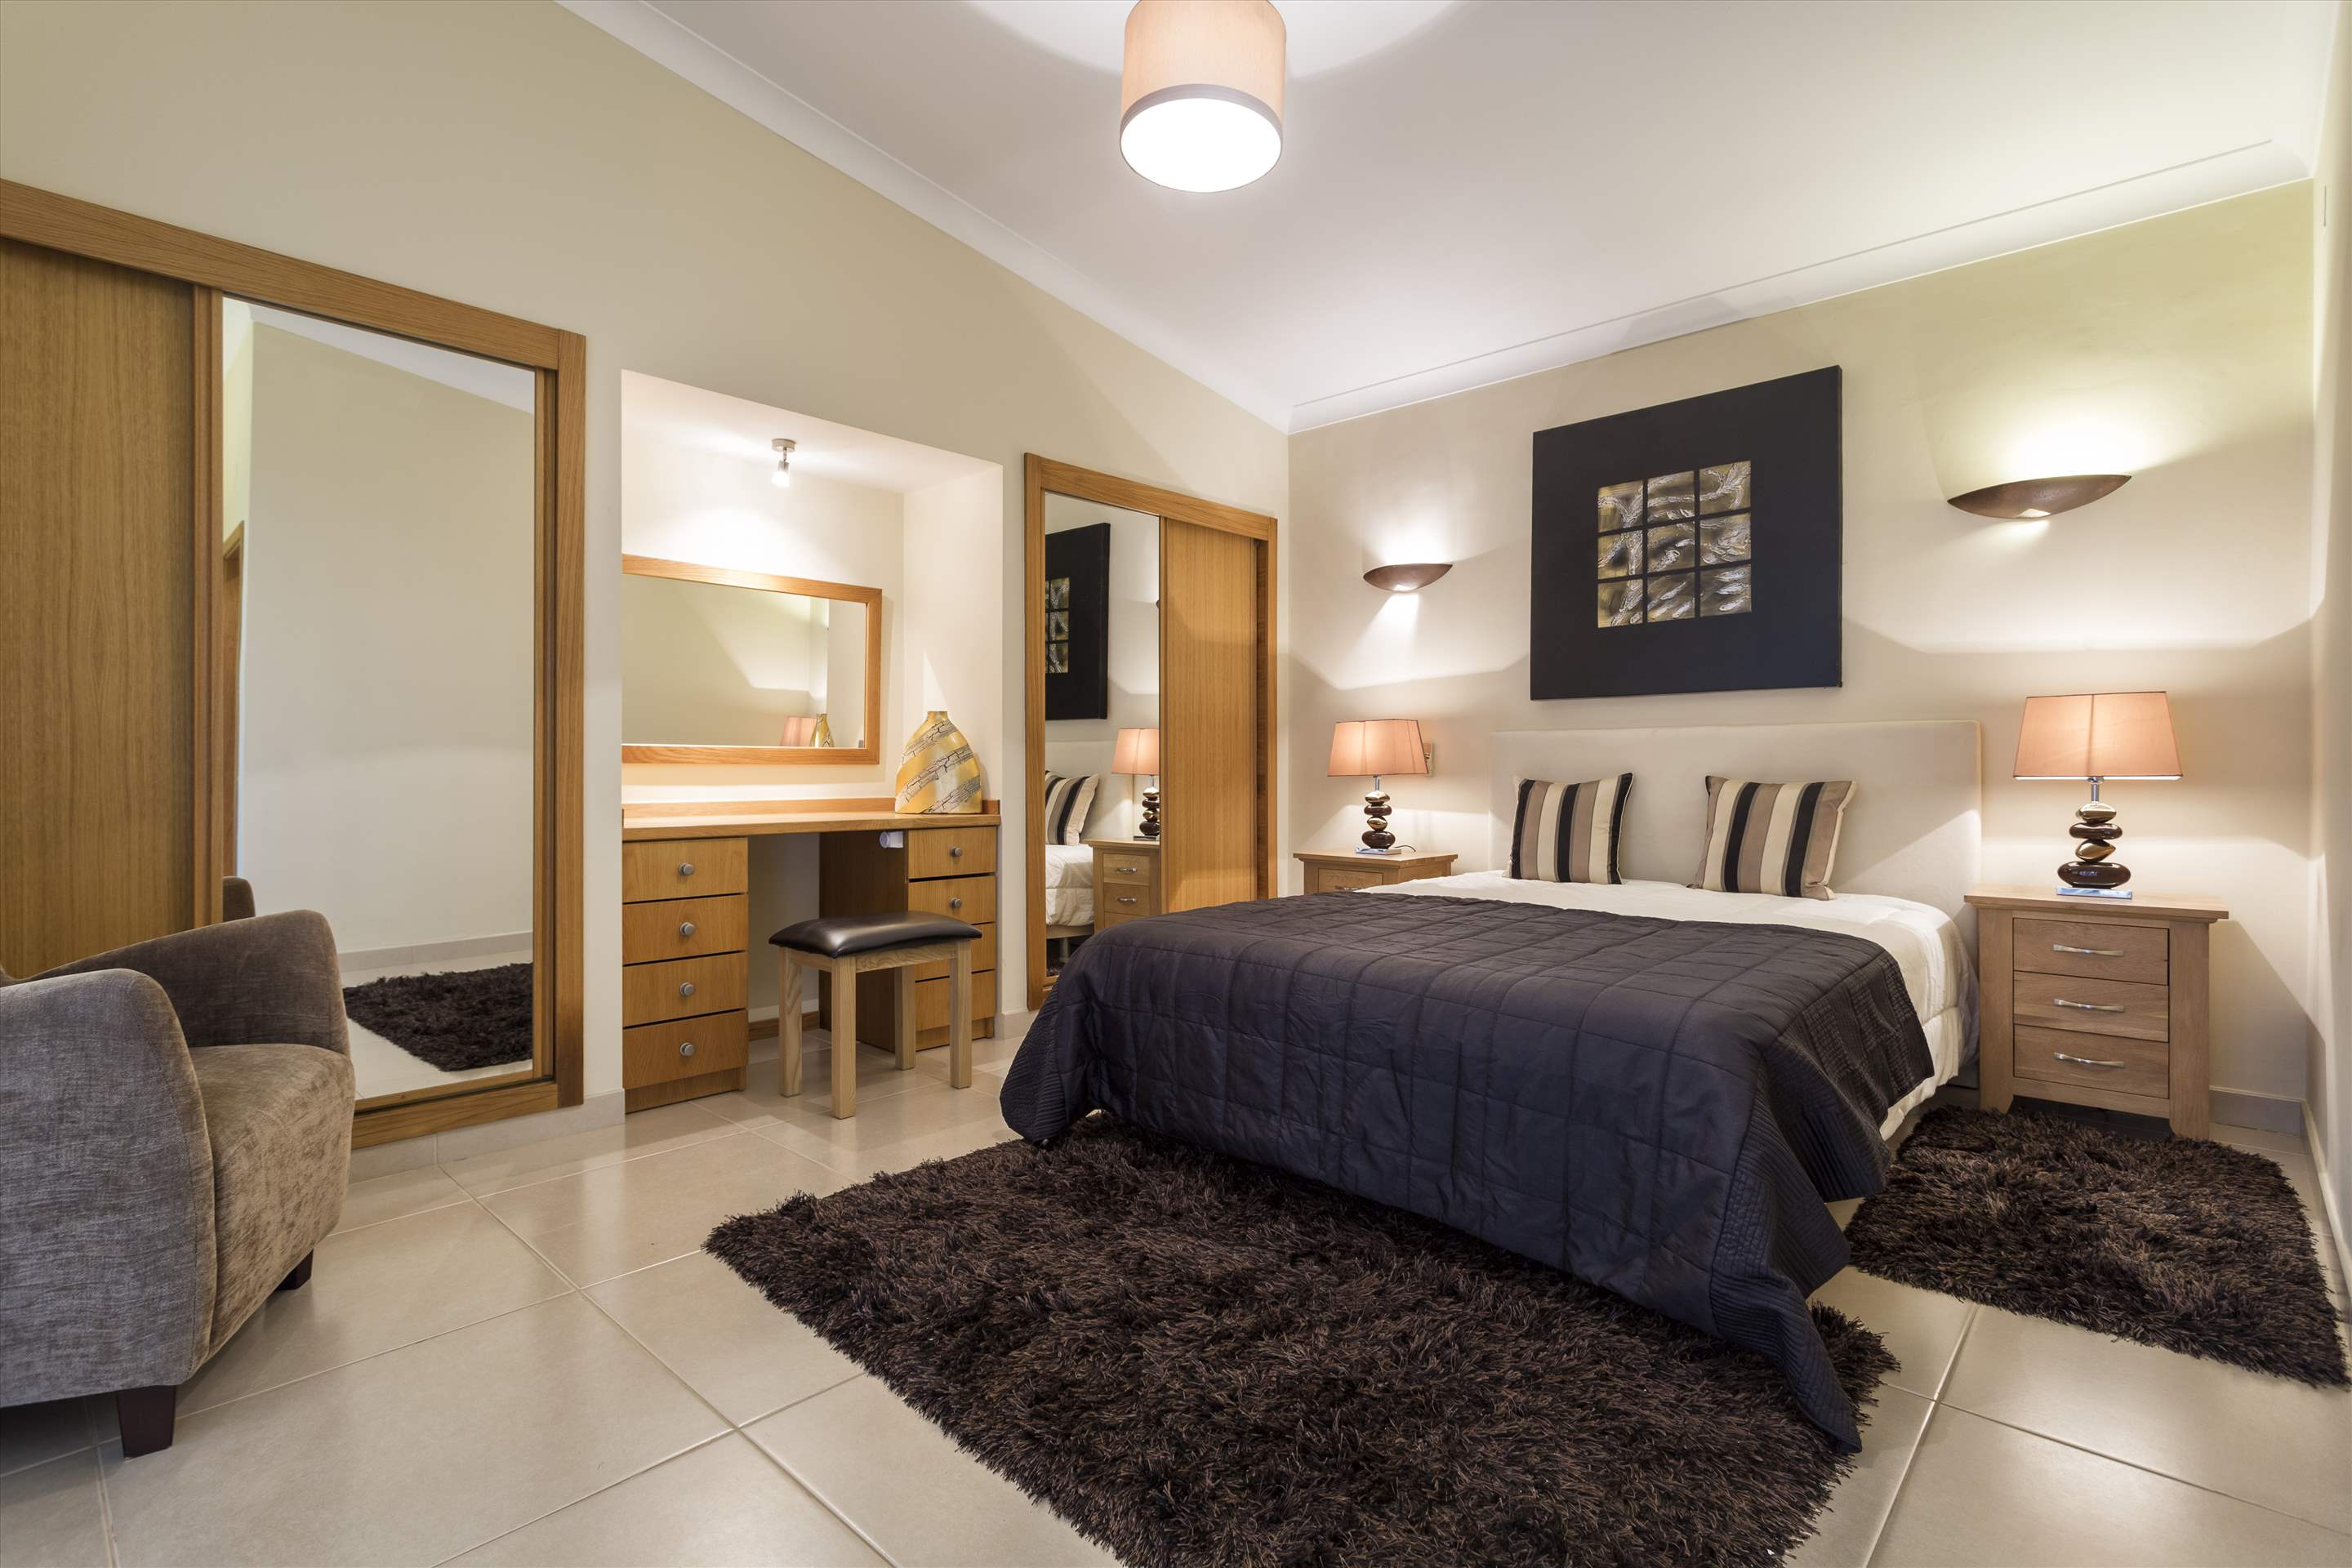 Casa Blanca, 4 Bed Rental, 4 bedroom villa in Vale do Lobo, Algarve Photo #9